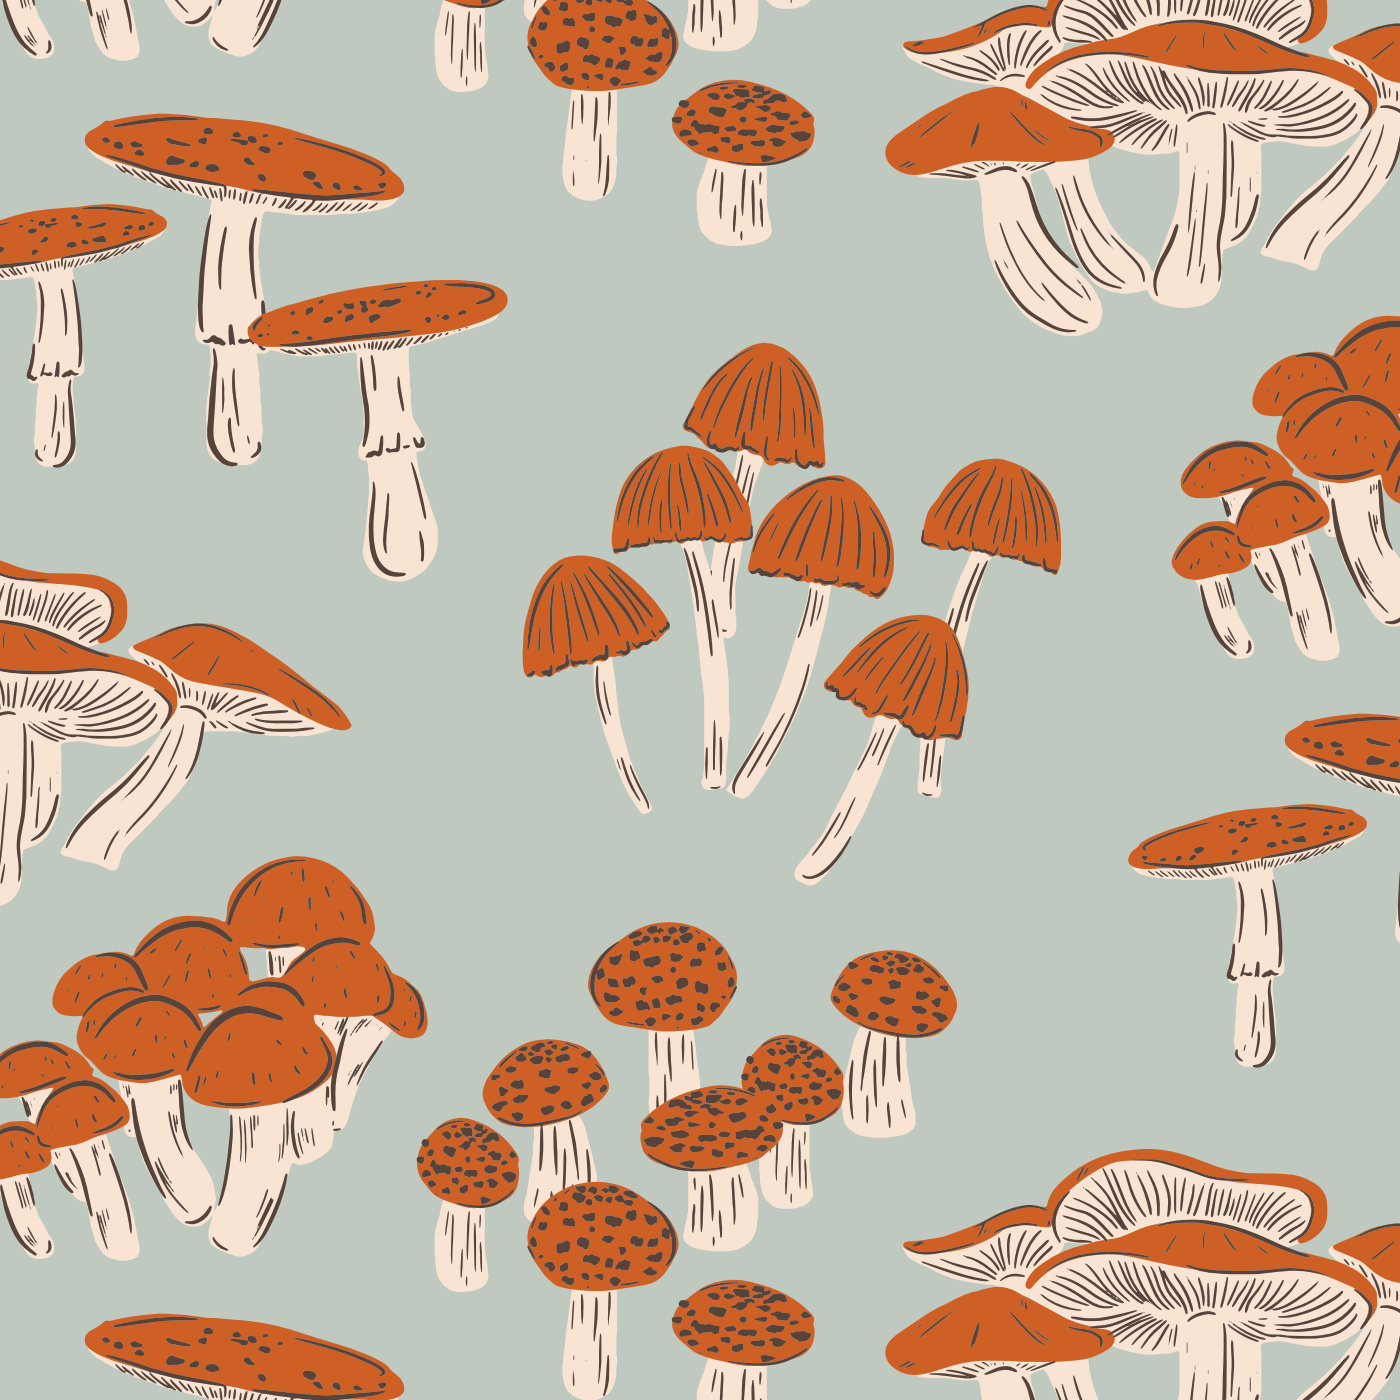 Vintage Mushroom Images  Free Download on Freepik